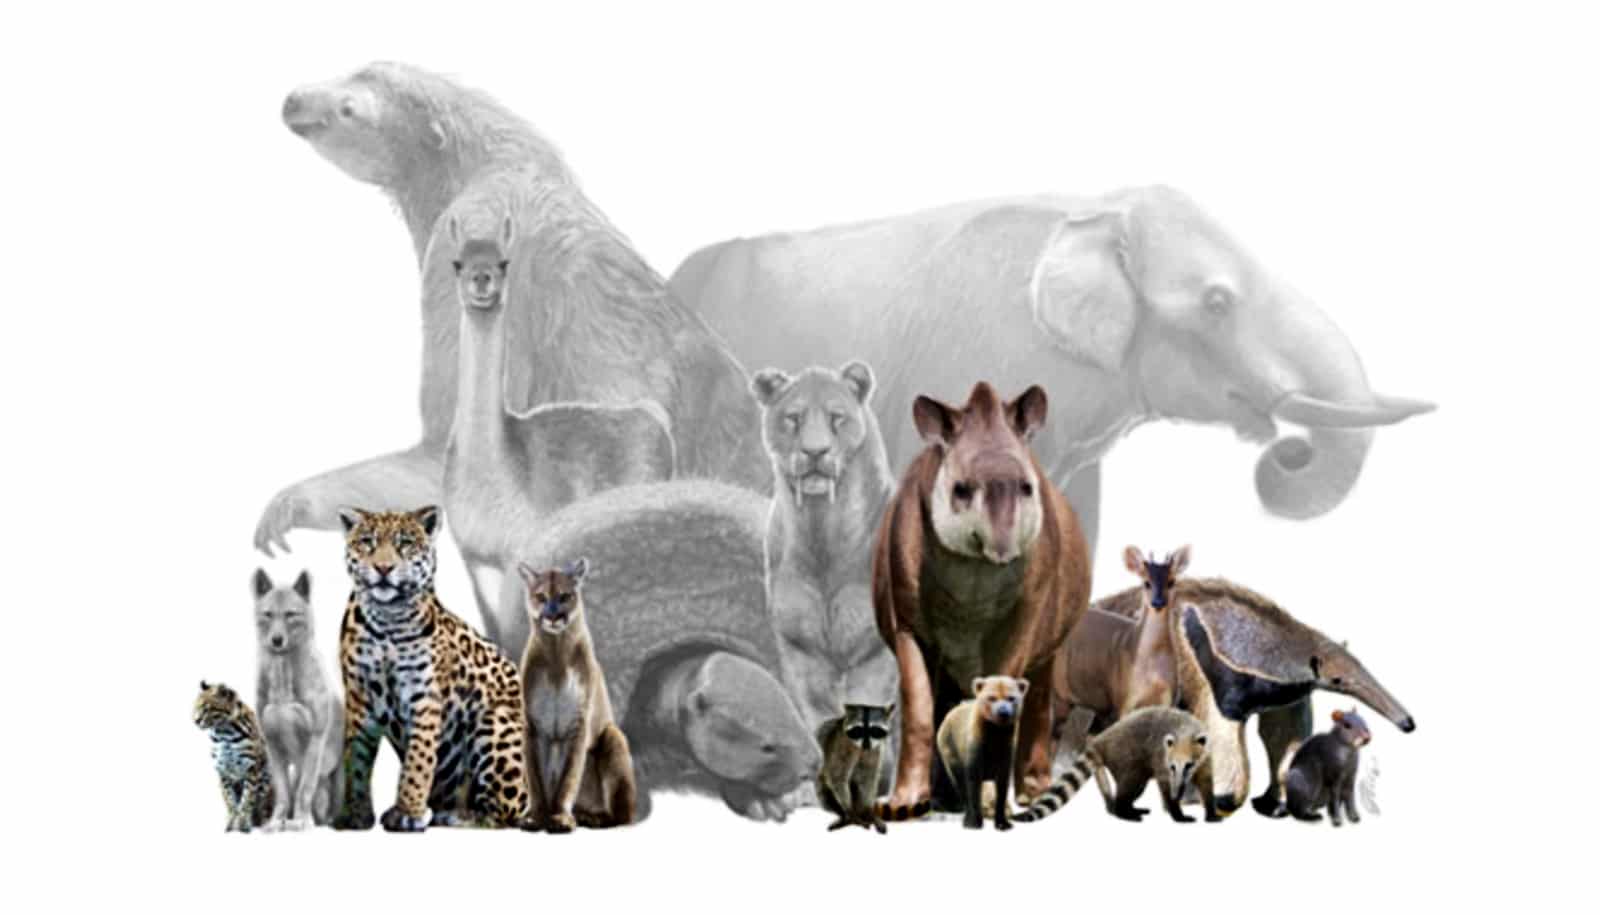 La perte de mammifères terrestres a détruit les réseaux trophiques pendant 130 000 ans